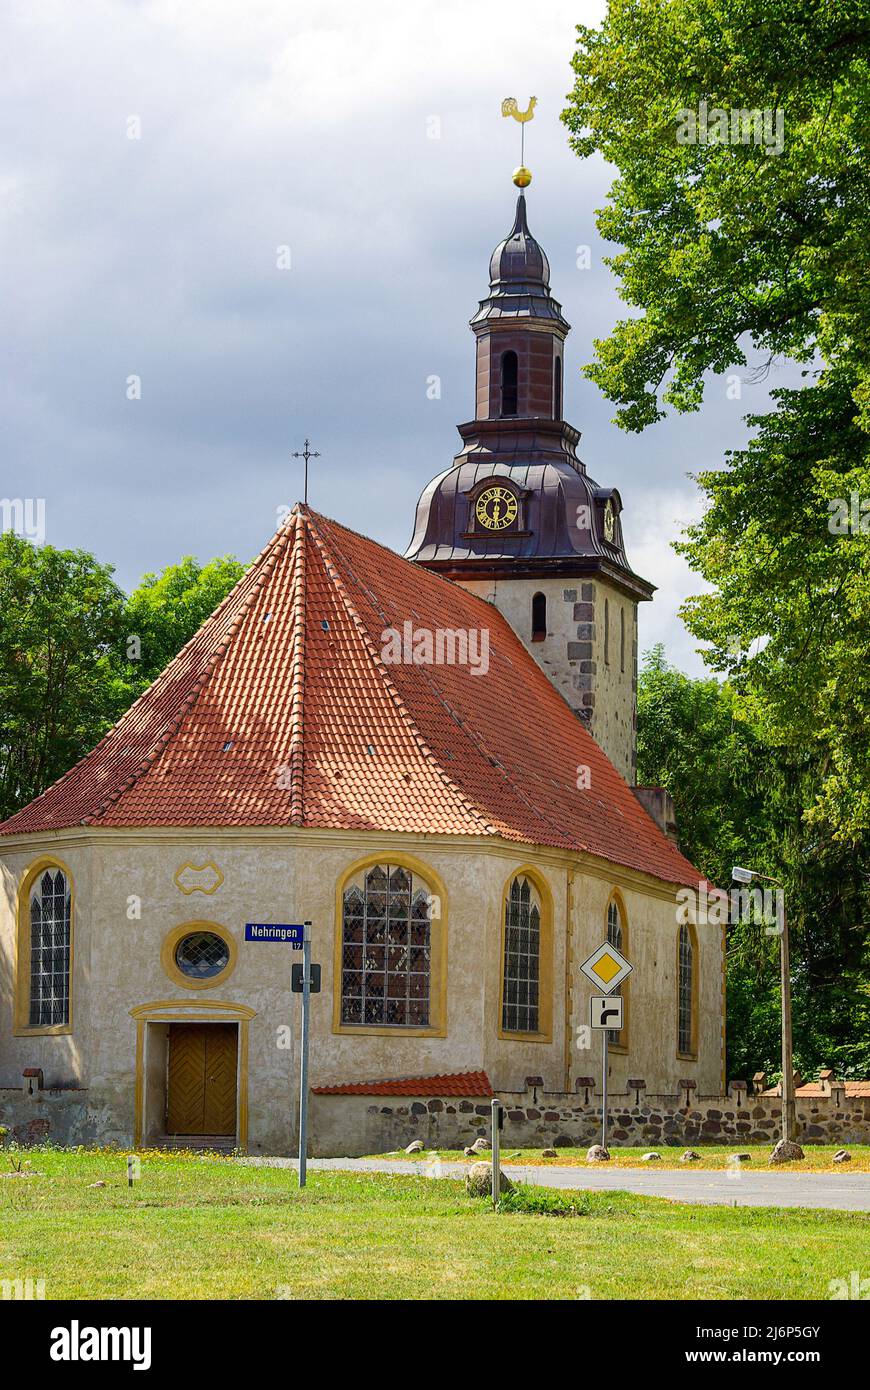 Die barocke Dorfkirche St. Andreas in Nehringen, Gemeinde Grammendorf, Mecklenburg-Vorpommern, Deutschland. Stockfoto